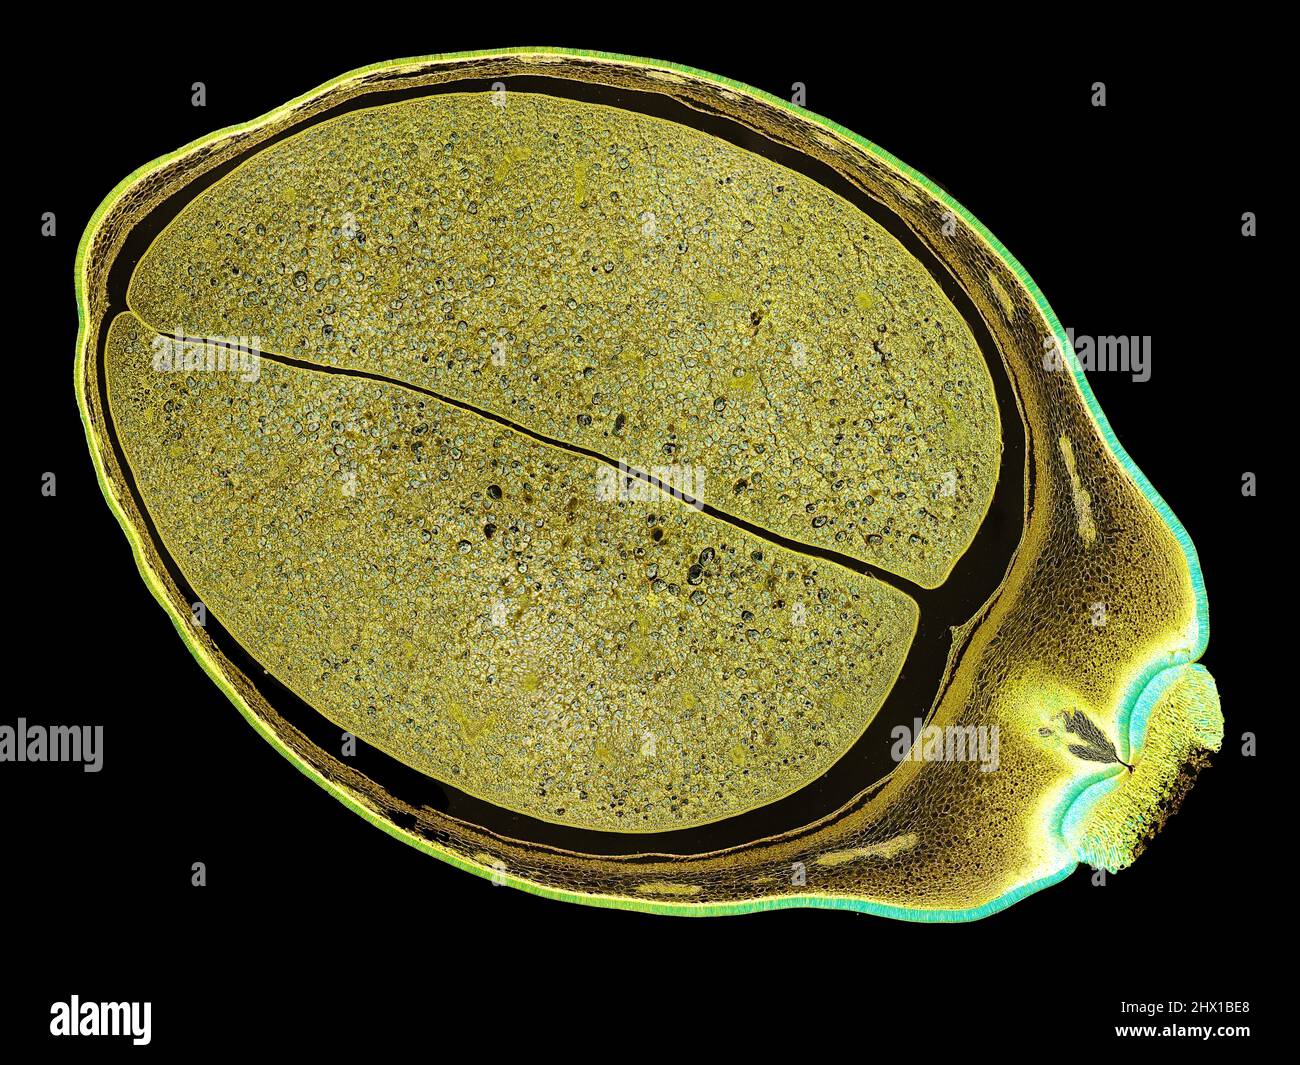 Schnittschnitt eines Pflanzenstamms unter dem Mikroskop – mikroskopische  Ansicht von Pflanzenzellen für die botanische Ausbildung – hohe Qualität  Stockfotografie - Alamy